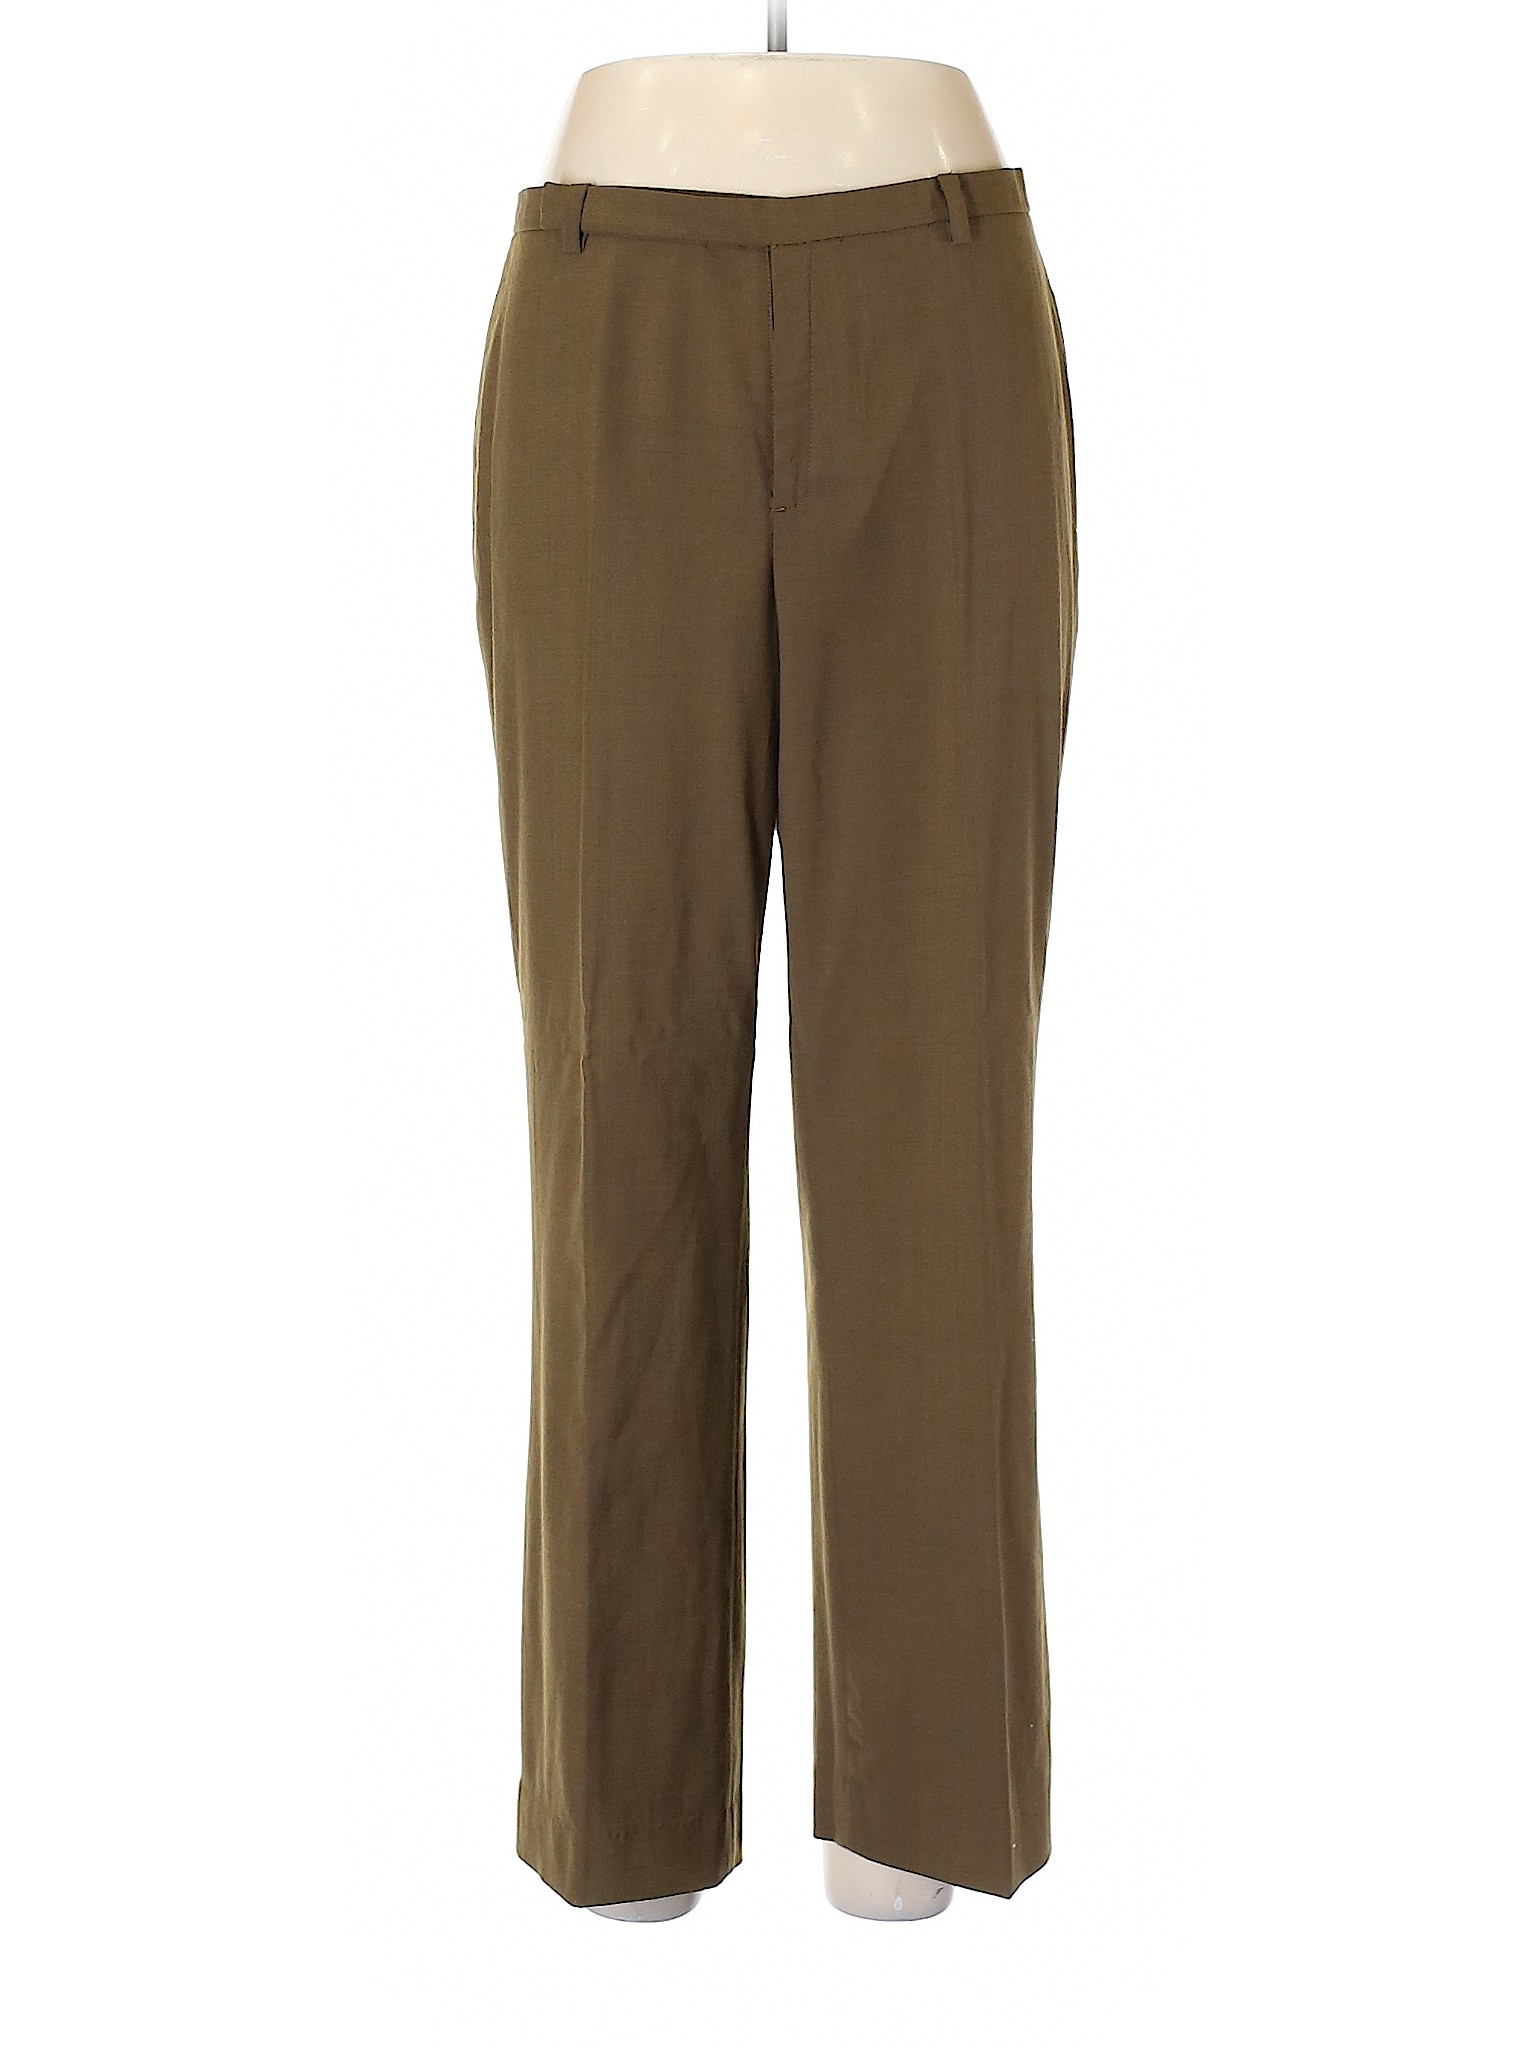 Gap Women Brown Casual Pants 10 | eBay